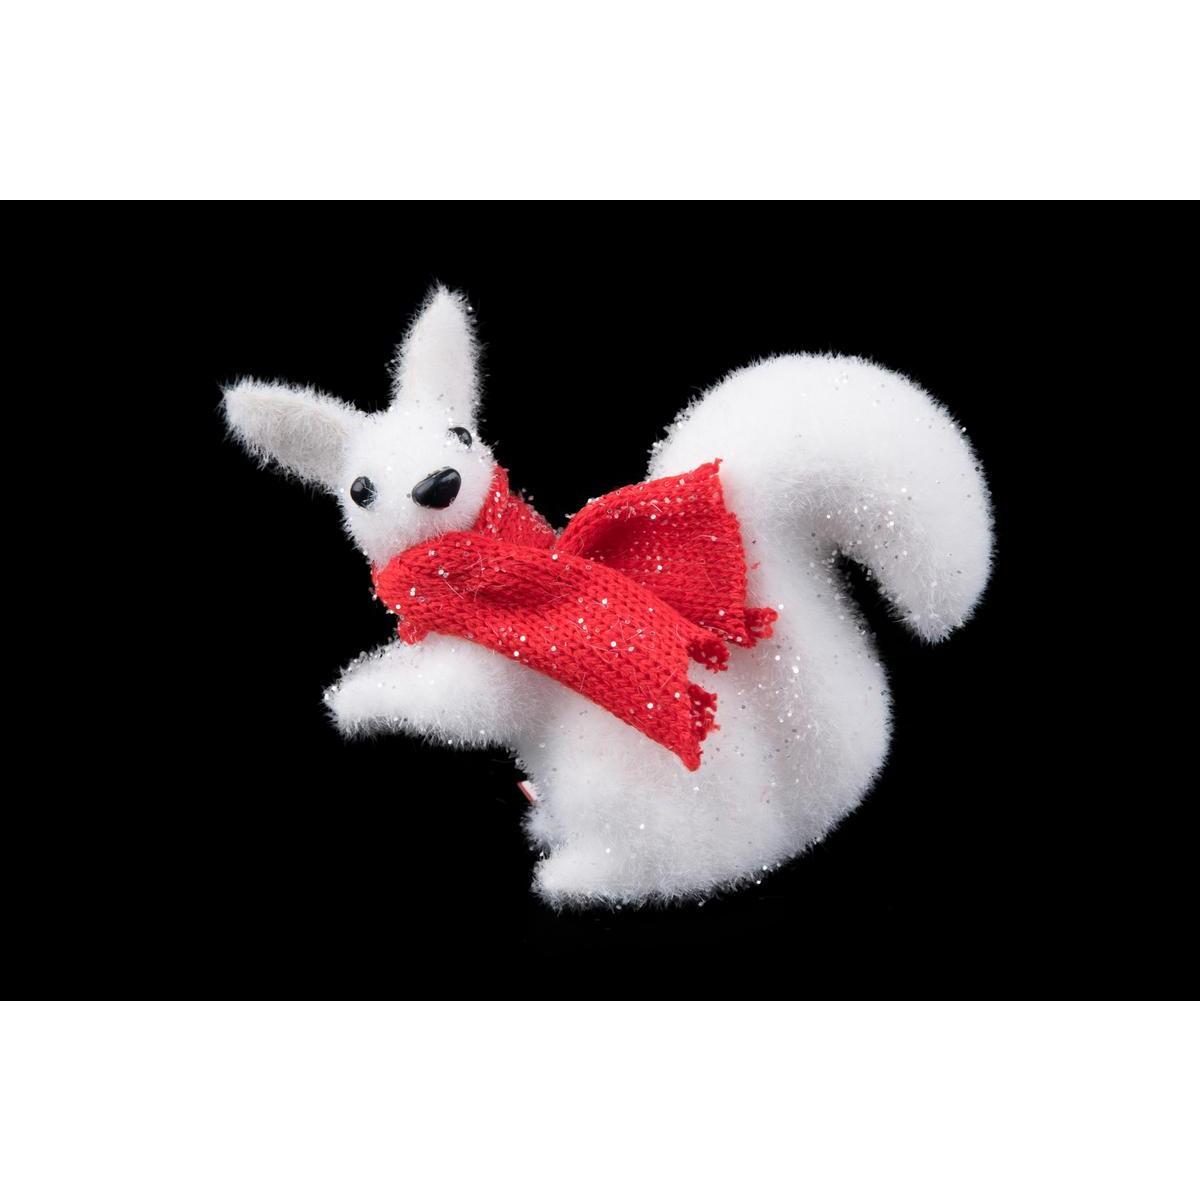 Suspension écureuil à écharpe - 12 x 4.5 x H 11.5 cm - Rouge, blanc